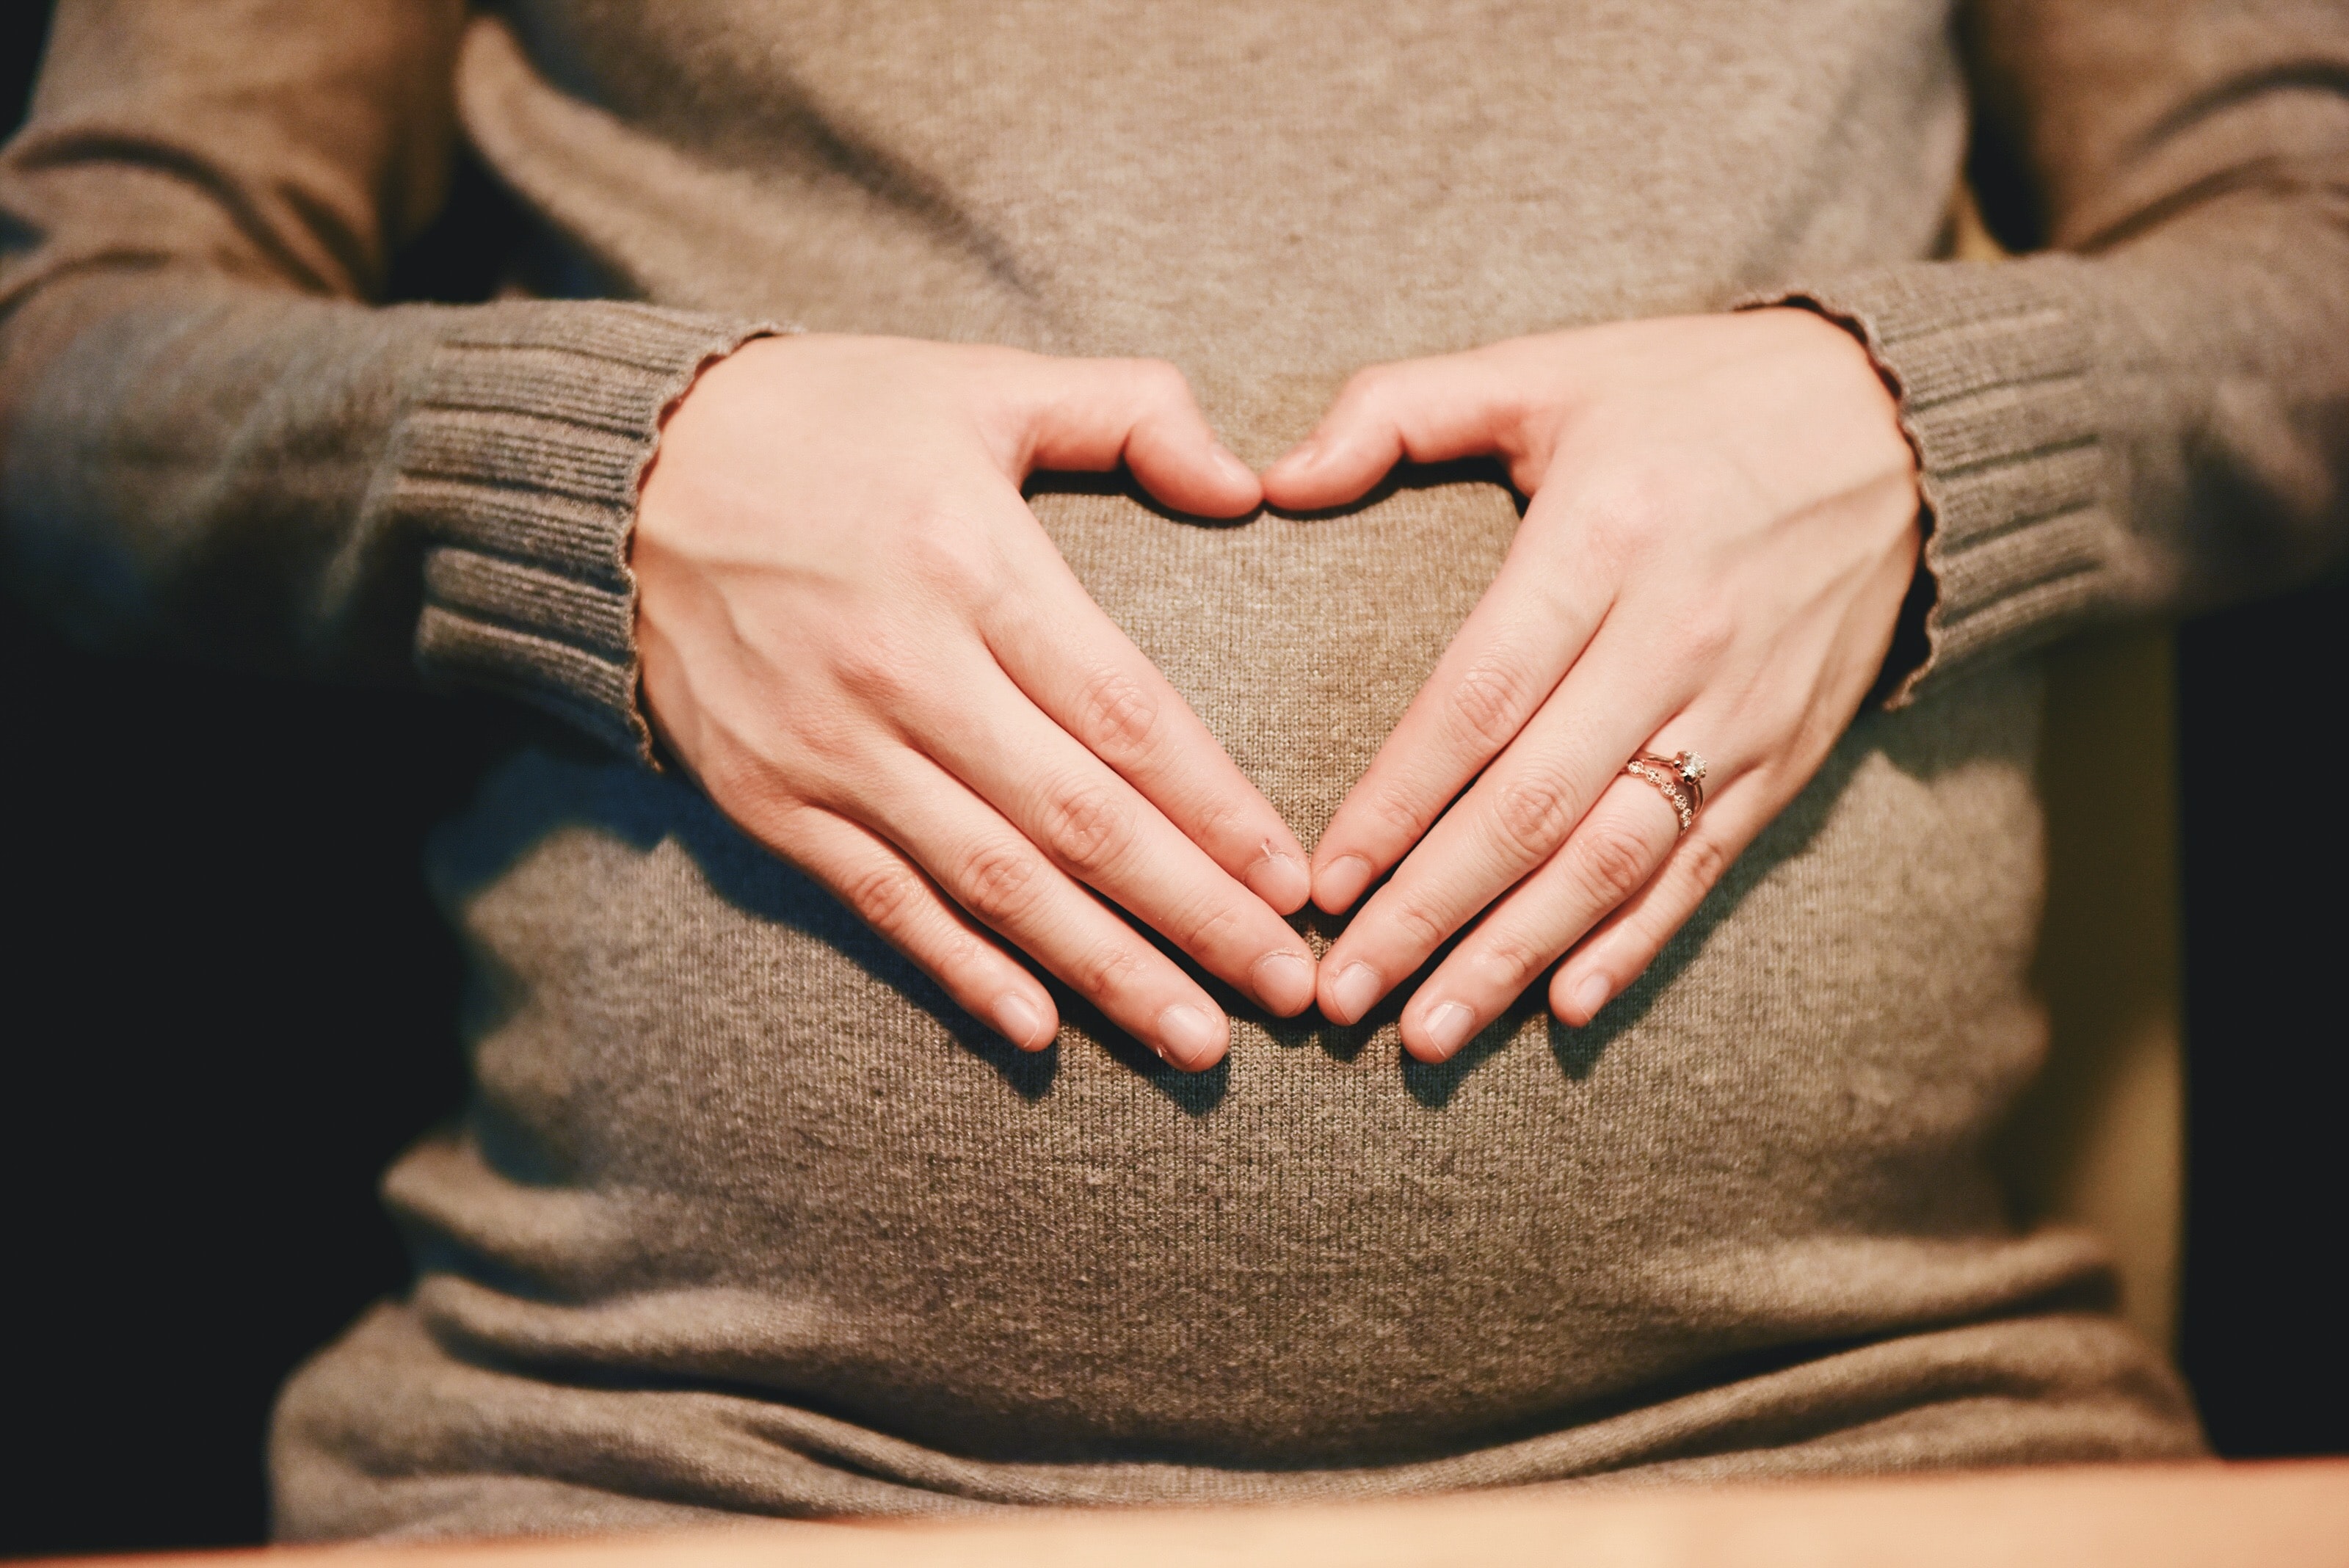 Επεκτείνεται το επίδομα μητρότητας στον ιδιωτικό τομέα από 6 μήνες σε 9